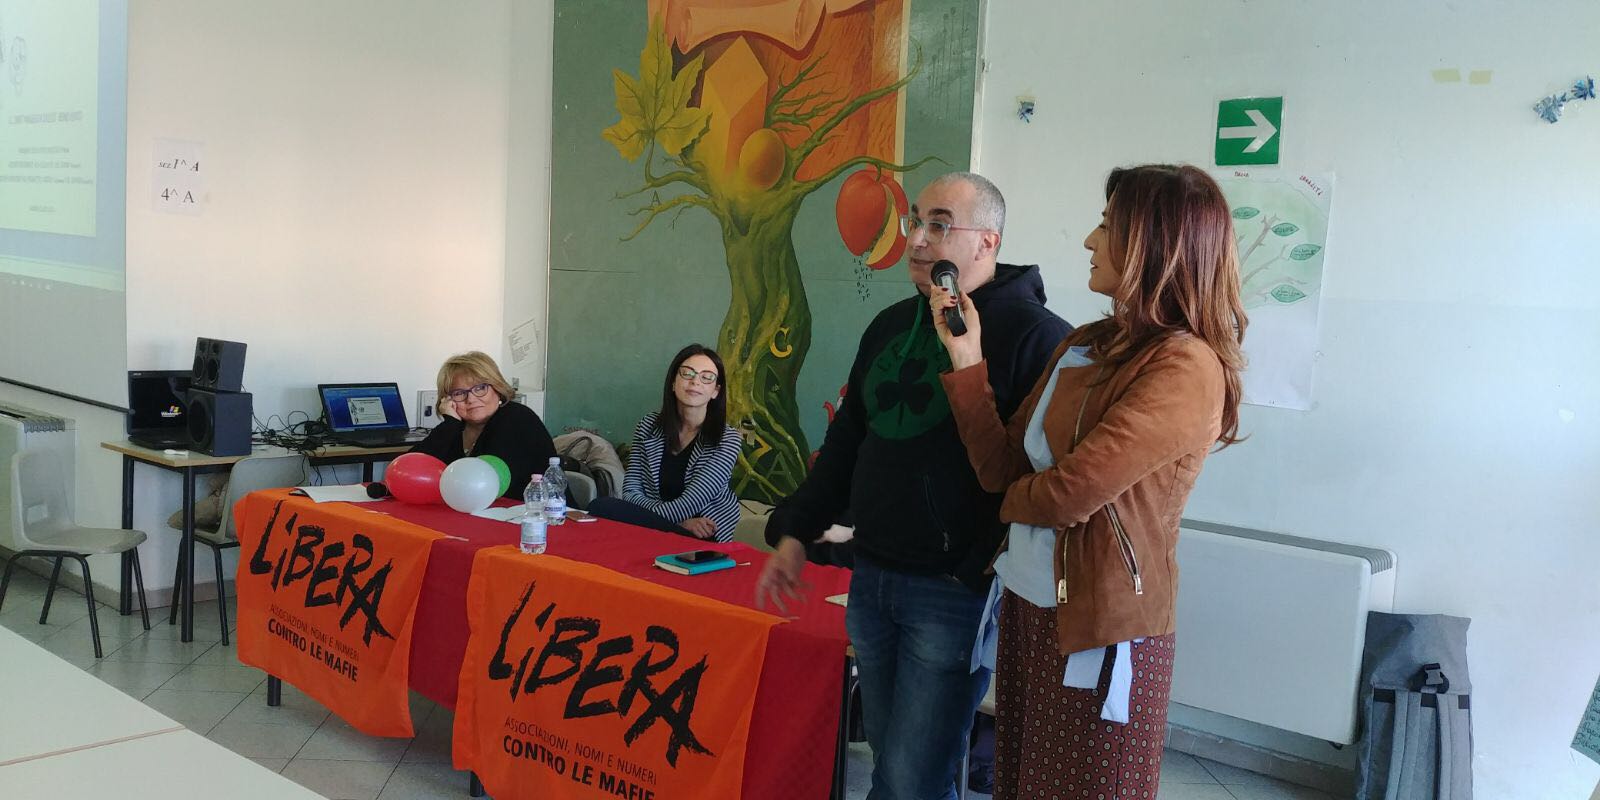 Benevento| Libera, proseguono gli incontri in vista del 21 marzo